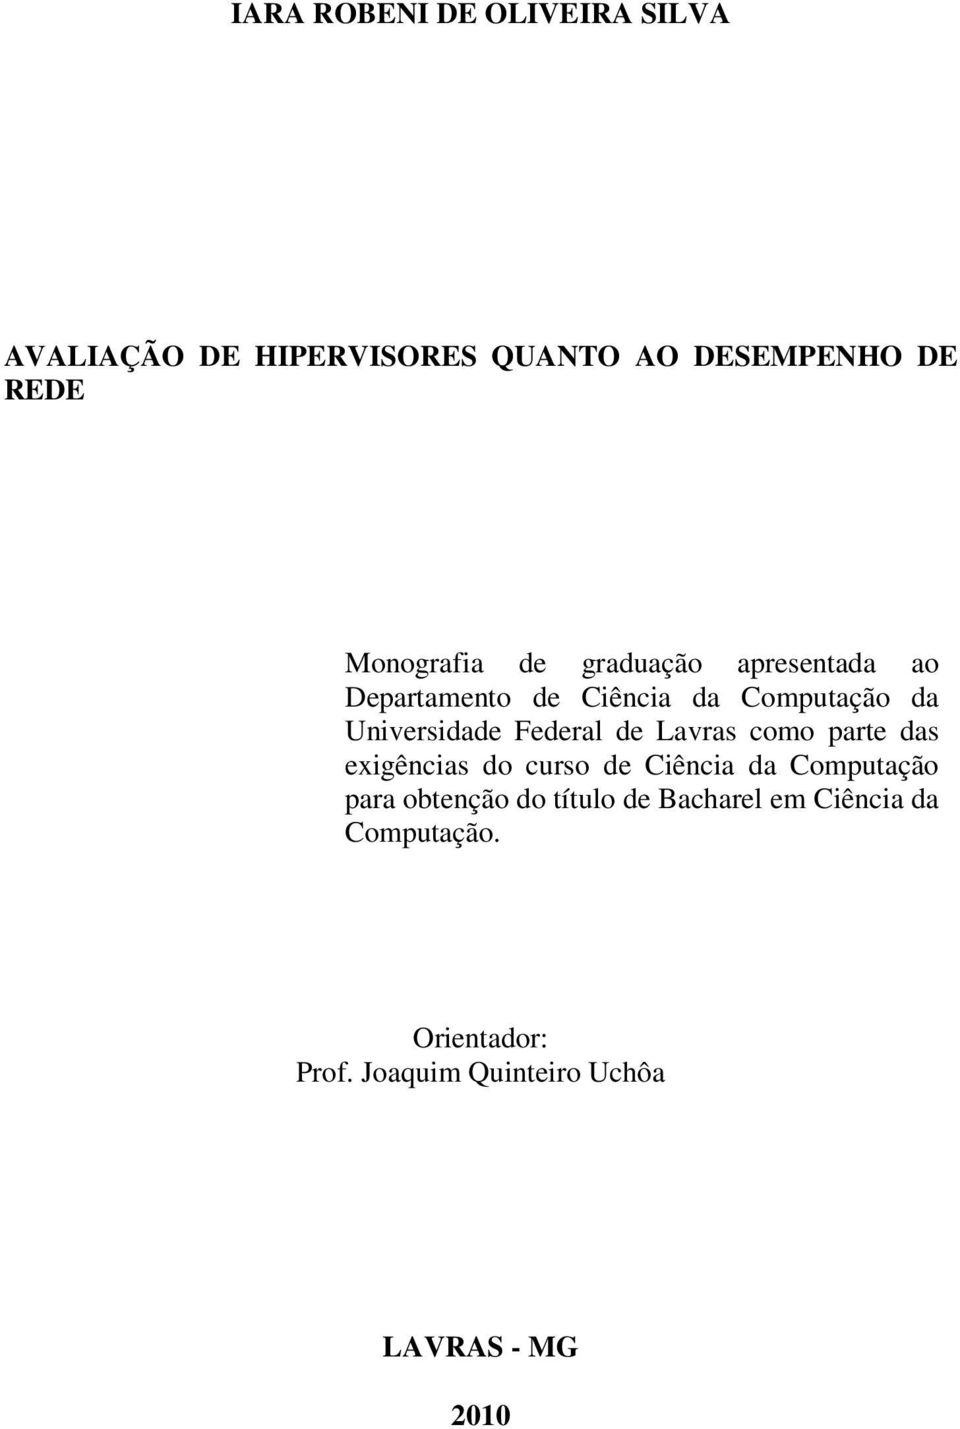 Federal de Lavras como parte das exigências do curso de Ciência da Computação para obtenção